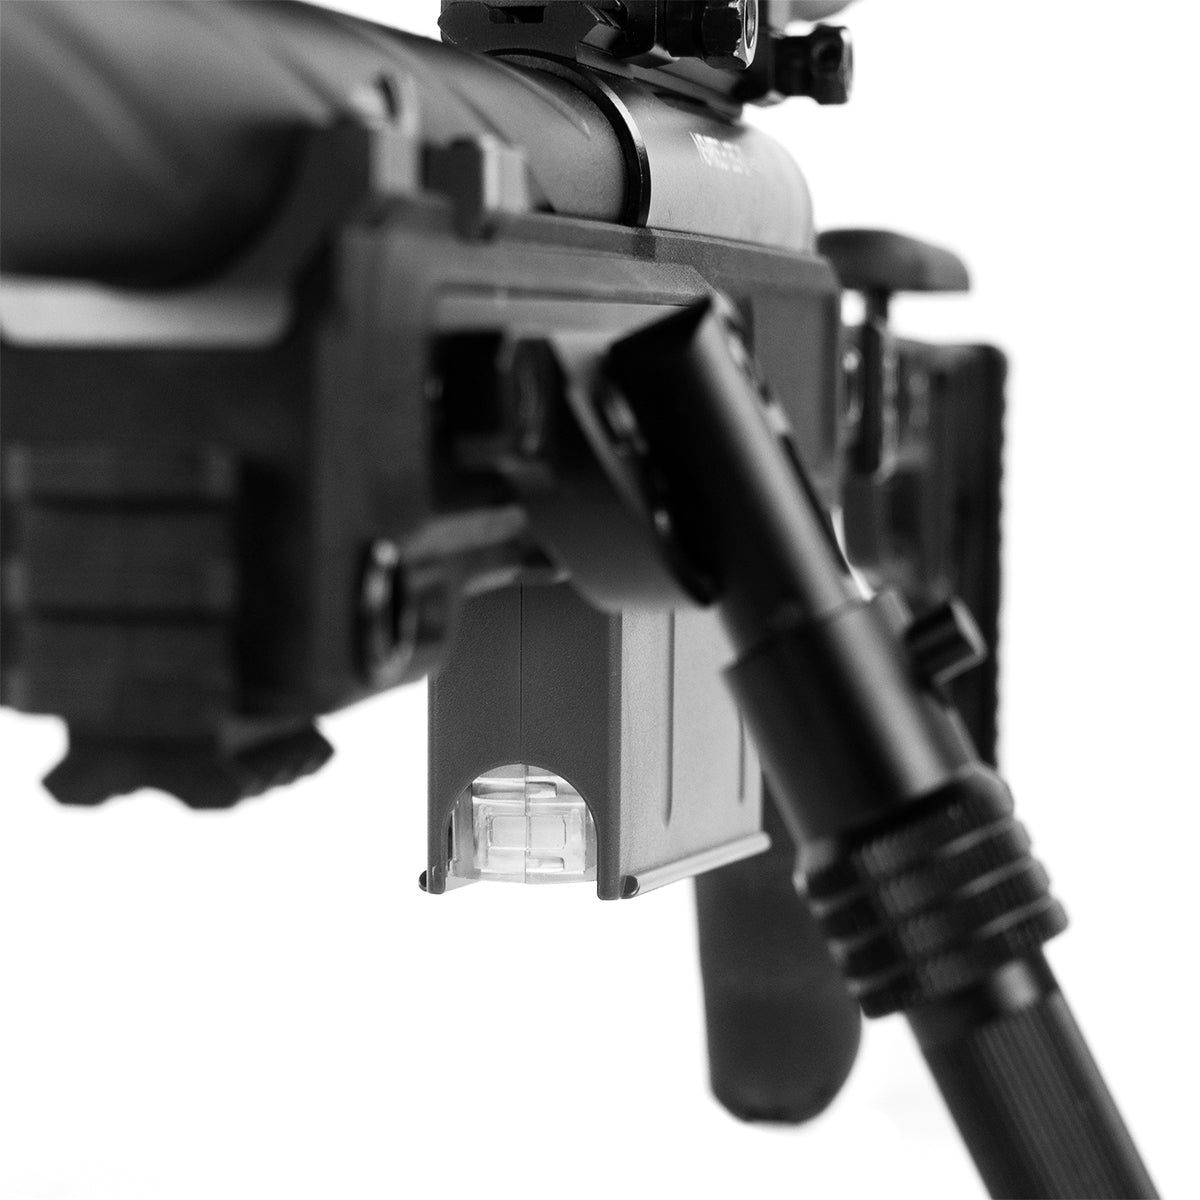 Novritsch SSG10 A3, 2,8J Airsoft Sniper Rifle (548fps, M160) - langer Lauf